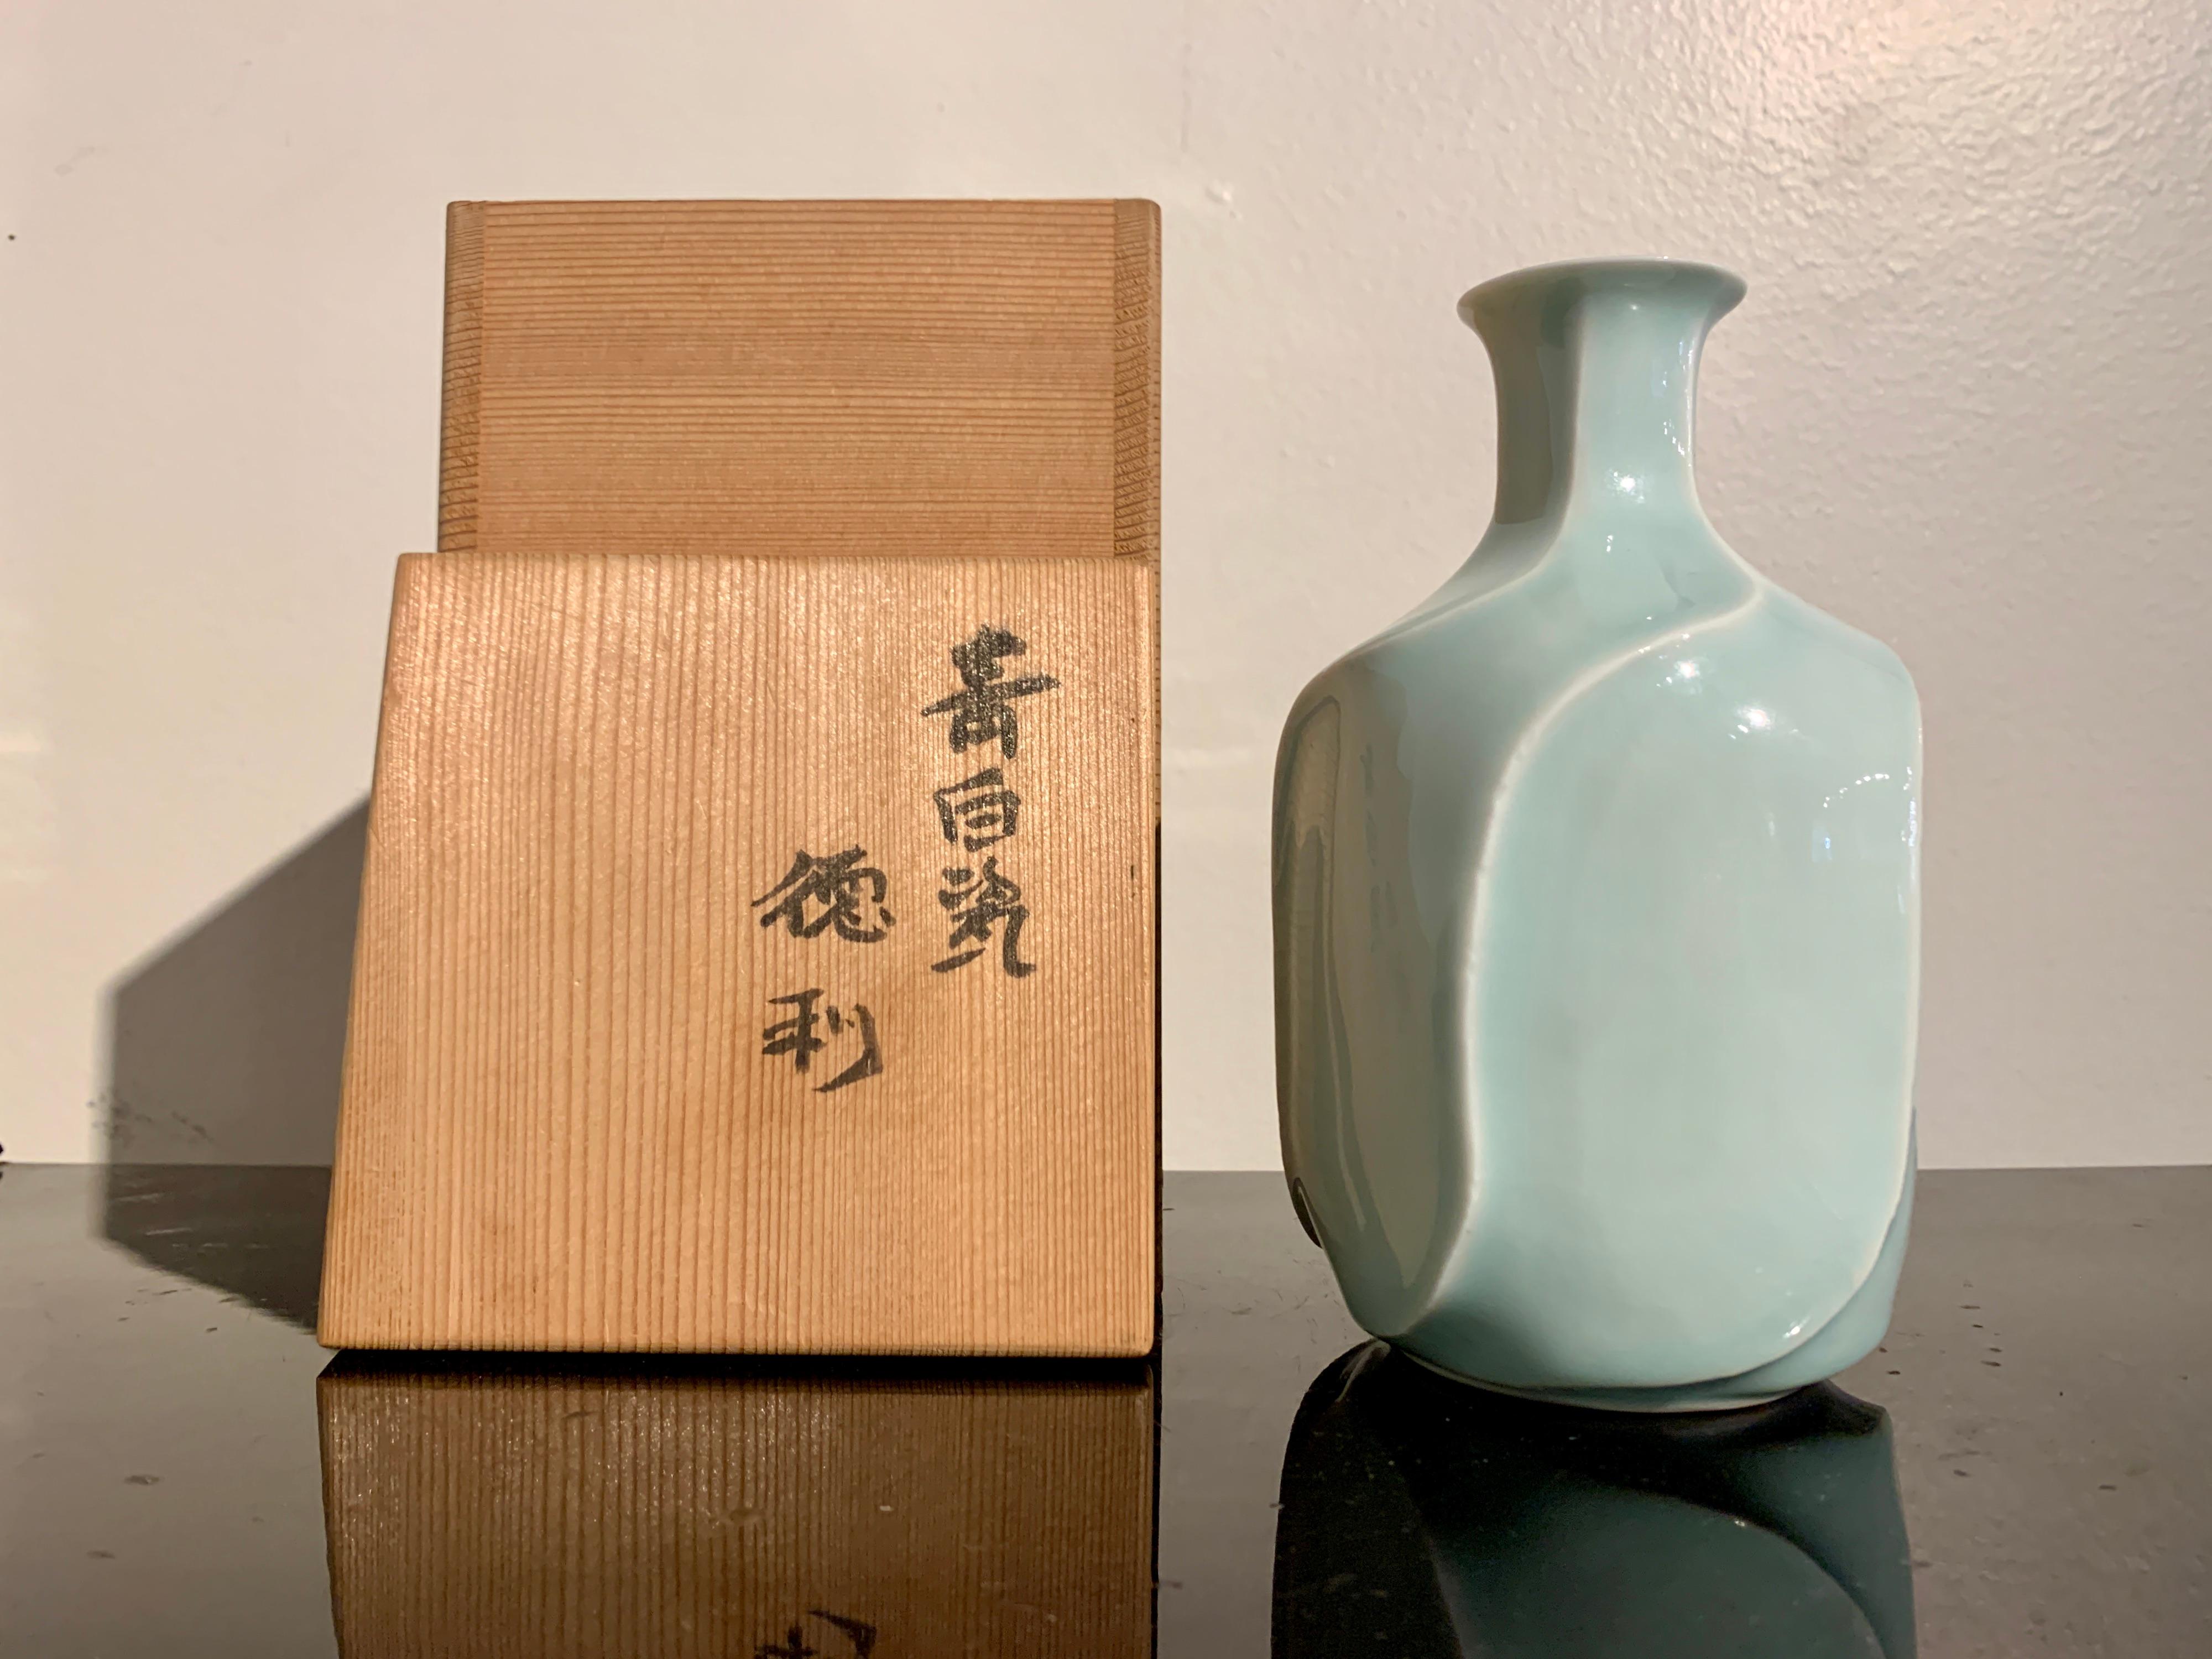 Eine erhabene und elegante seihakuji (qingbai oder celadon) glasierte Porzellan tokkuri (Sake-Flasche) von Miyanaga Tozan III, auch bekannt als Miyanaga Rikichi, (geb. 1935), Showa-Periode, ca. 1980er Jahre, Japan.

Die Sake-Flasche, Tokkuri